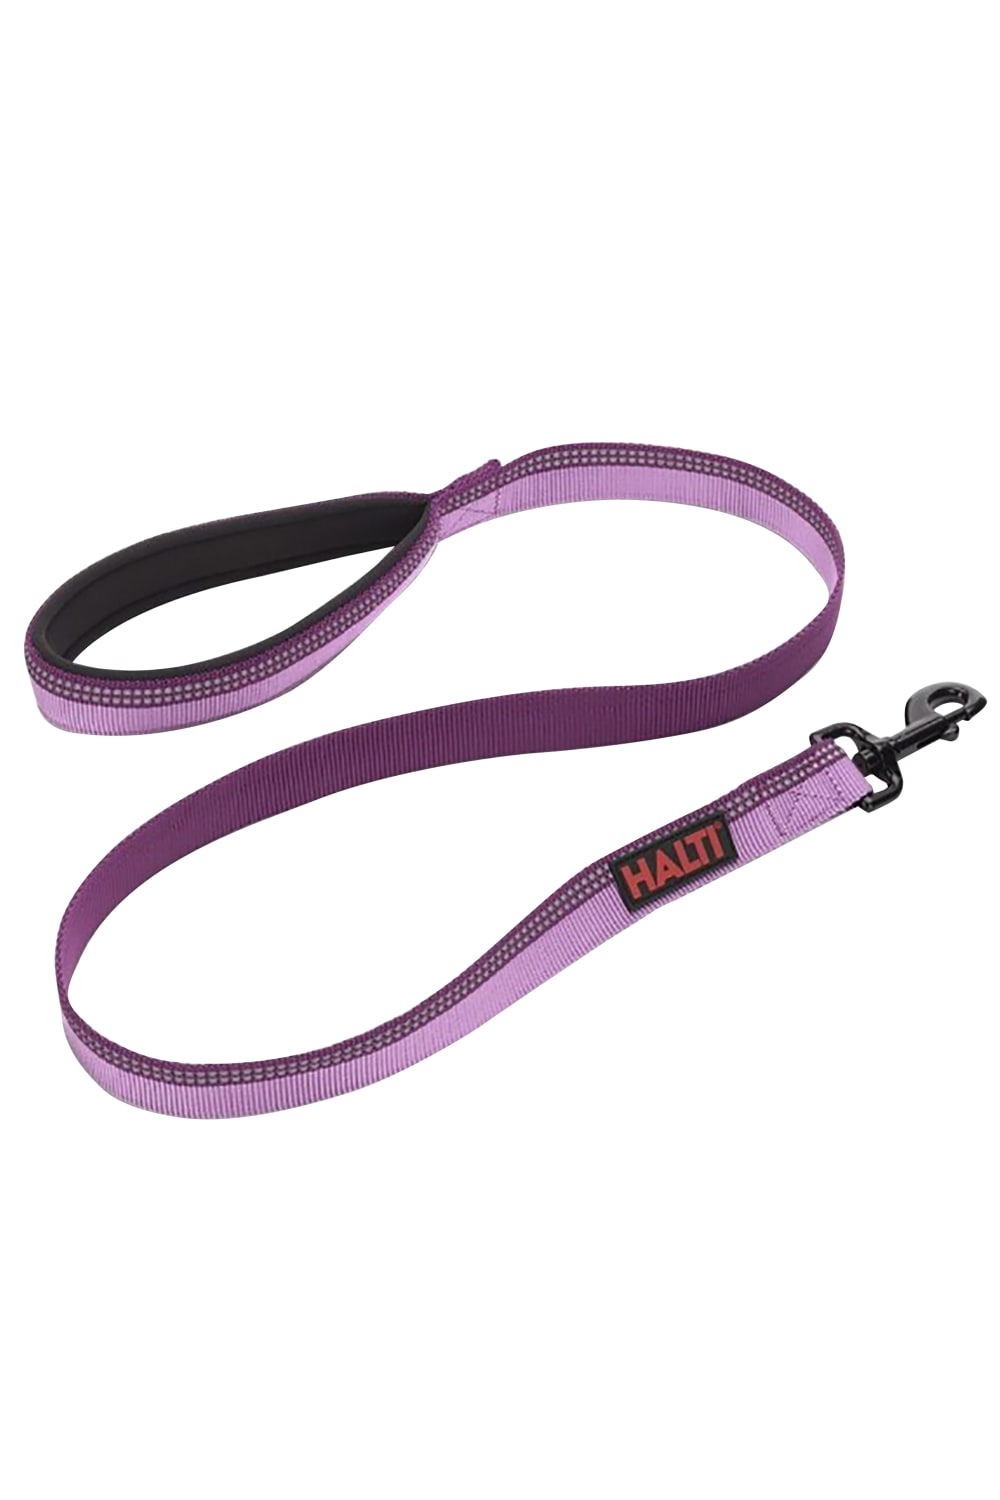 Halti Lead (Purple) (Small)